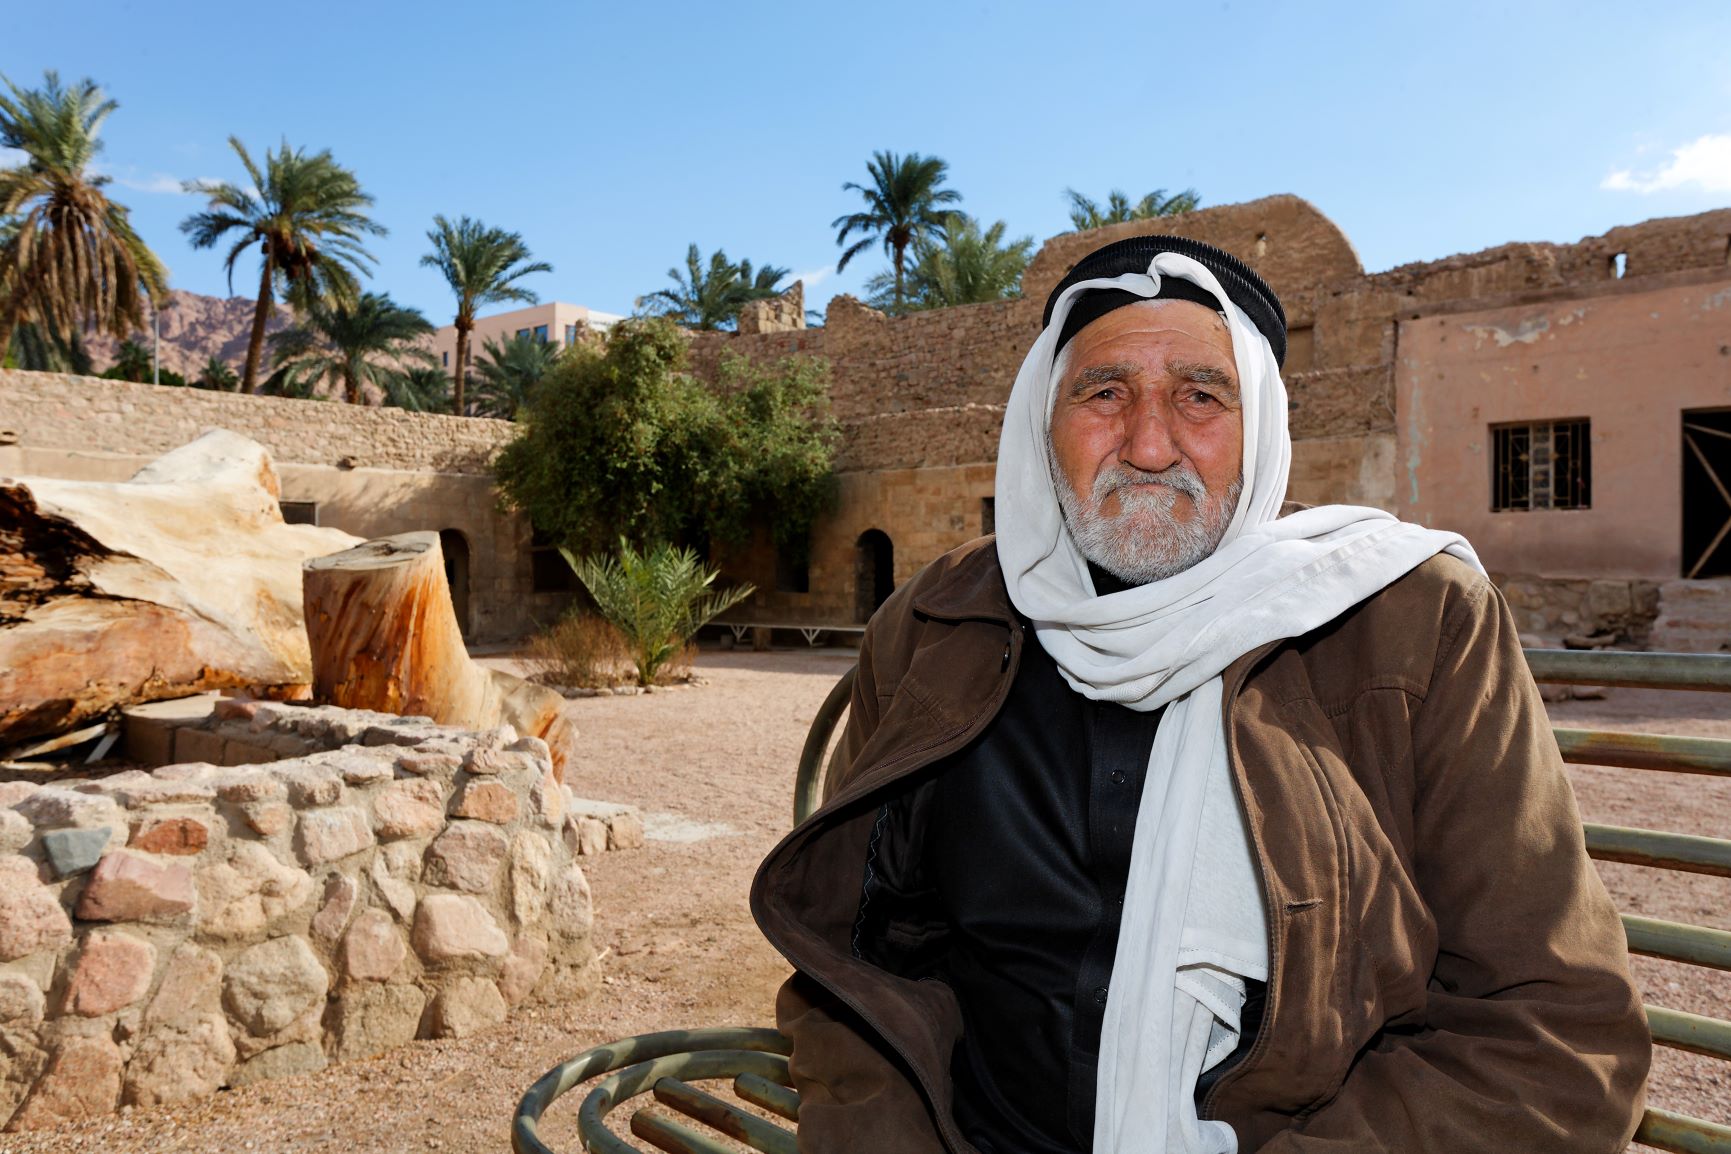 Aqabawi Man